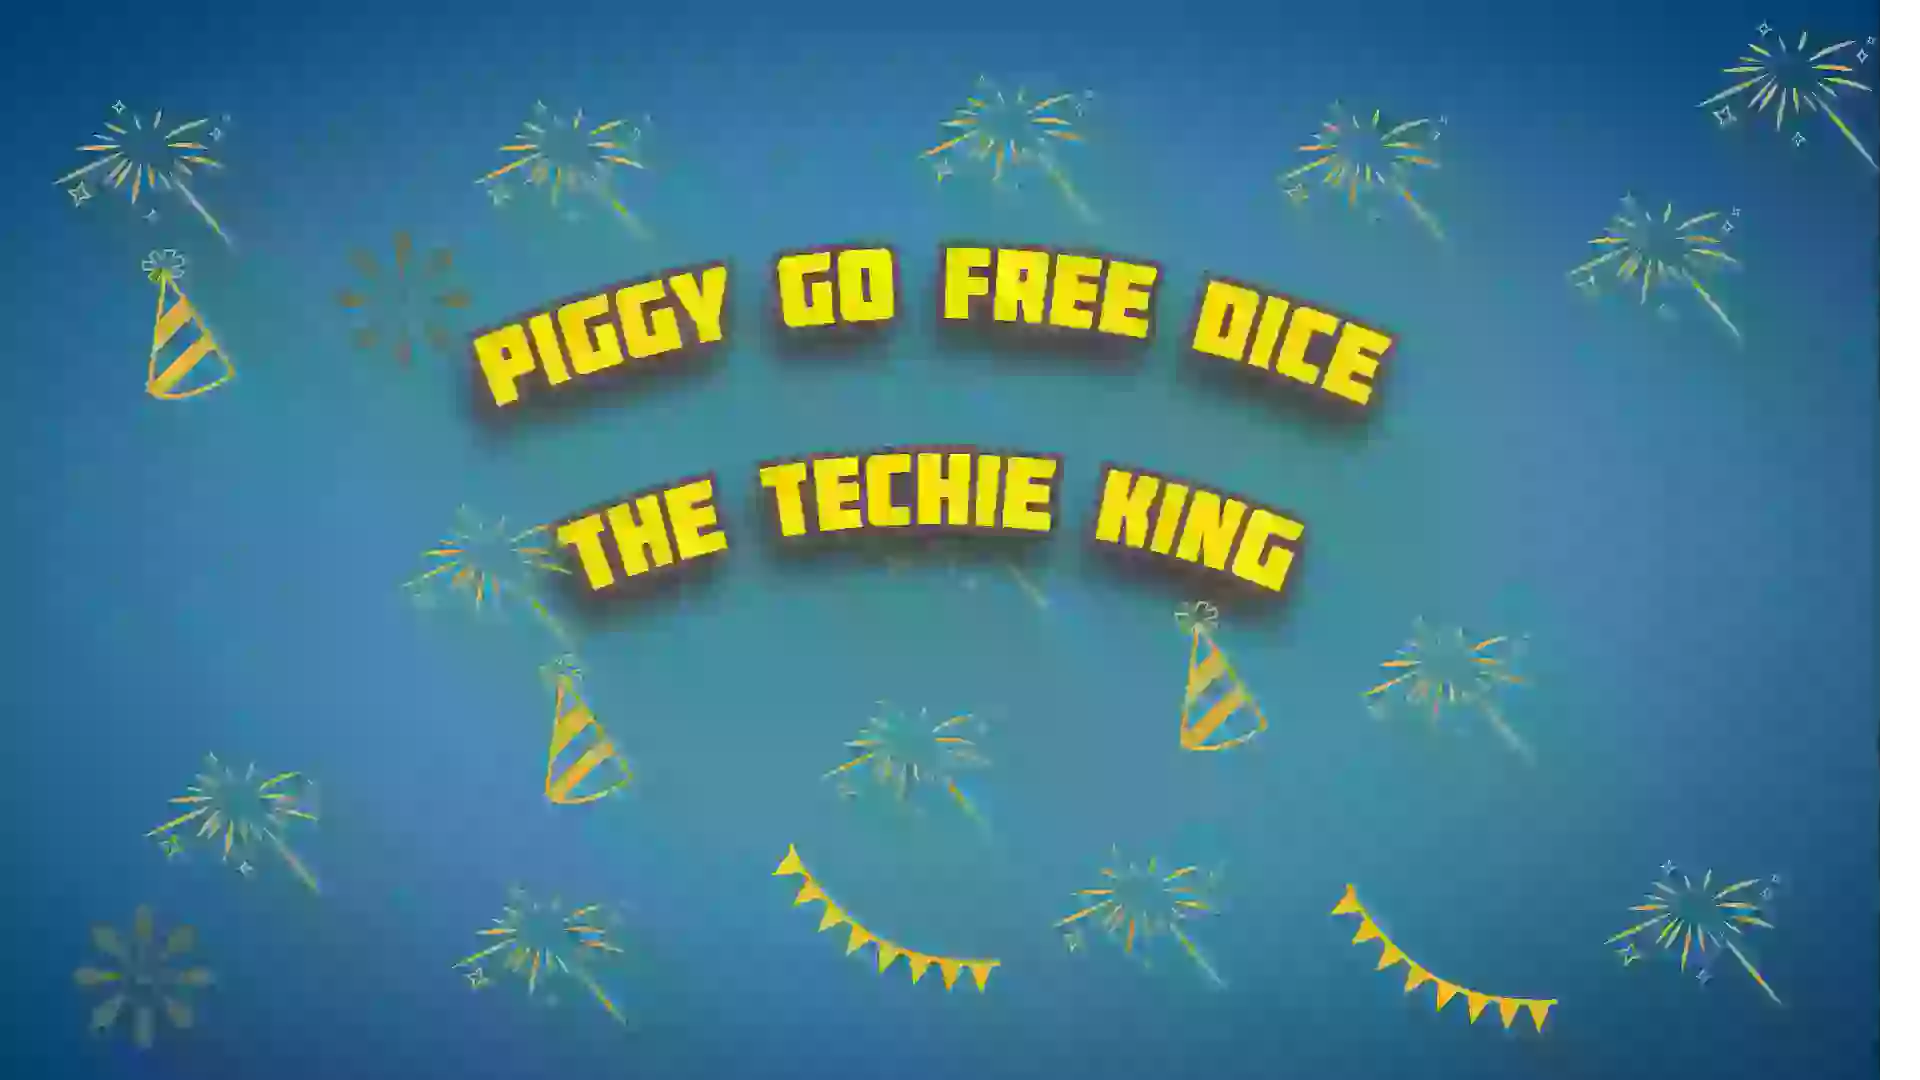 Piggy go free dice links